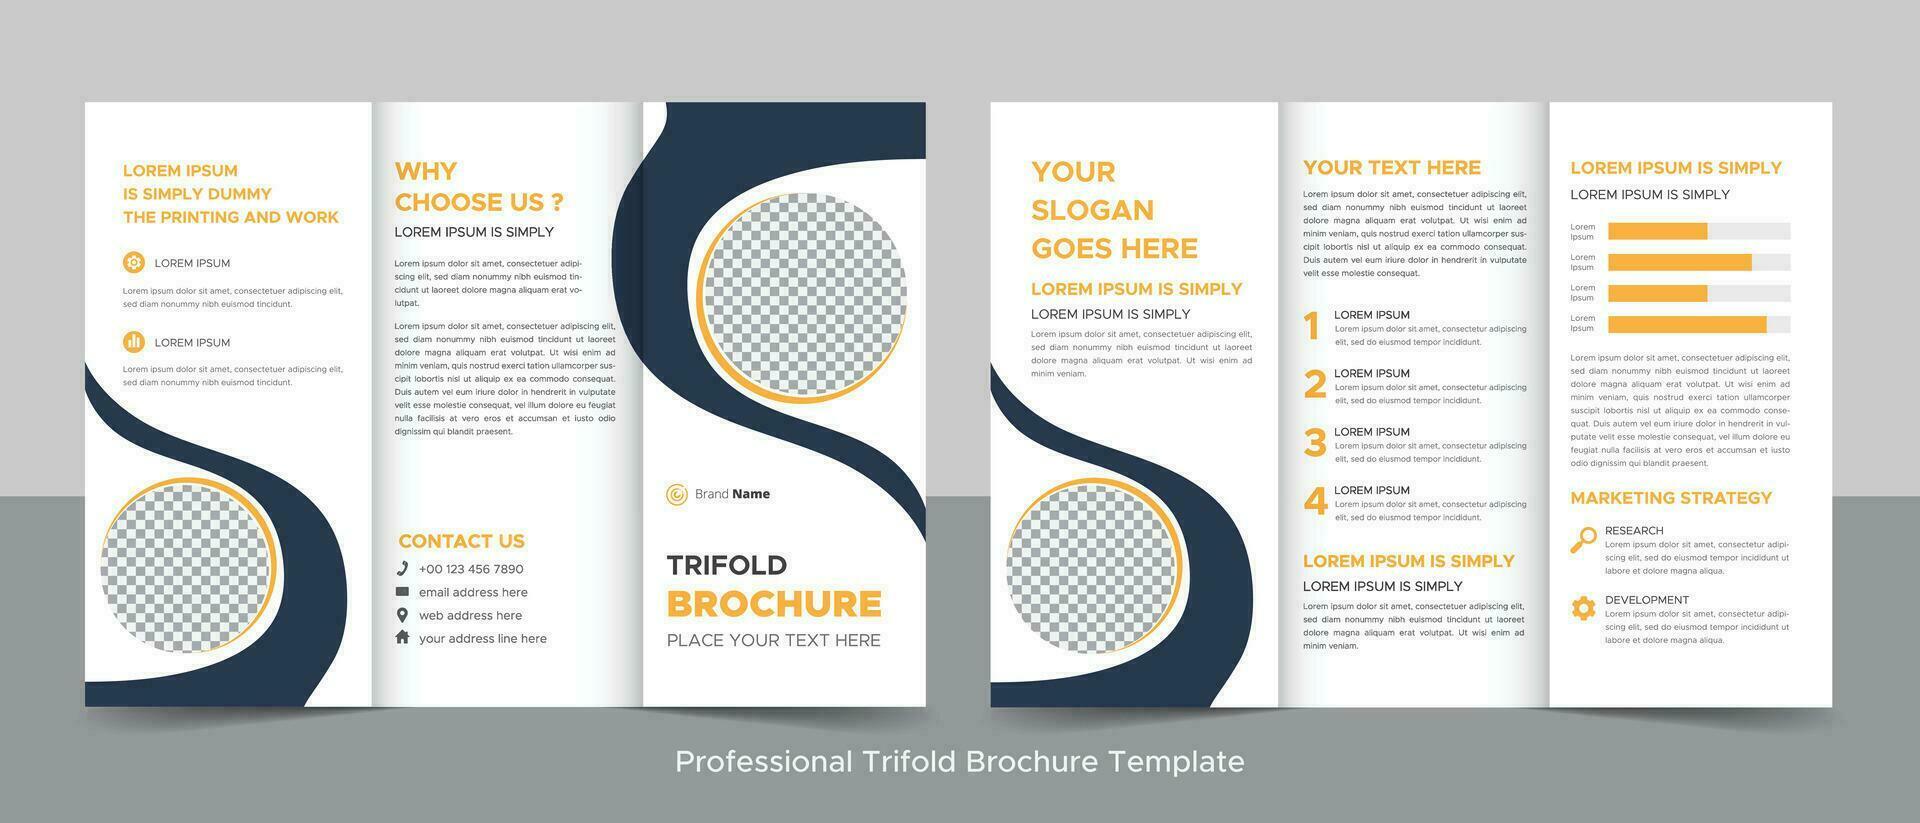 Kreative dreifach gefaltete Broschürenvorlage für moderne Unternehmen, dreifach gefaltetes Layout, Brief, Broschüre im A4-Format. vektor